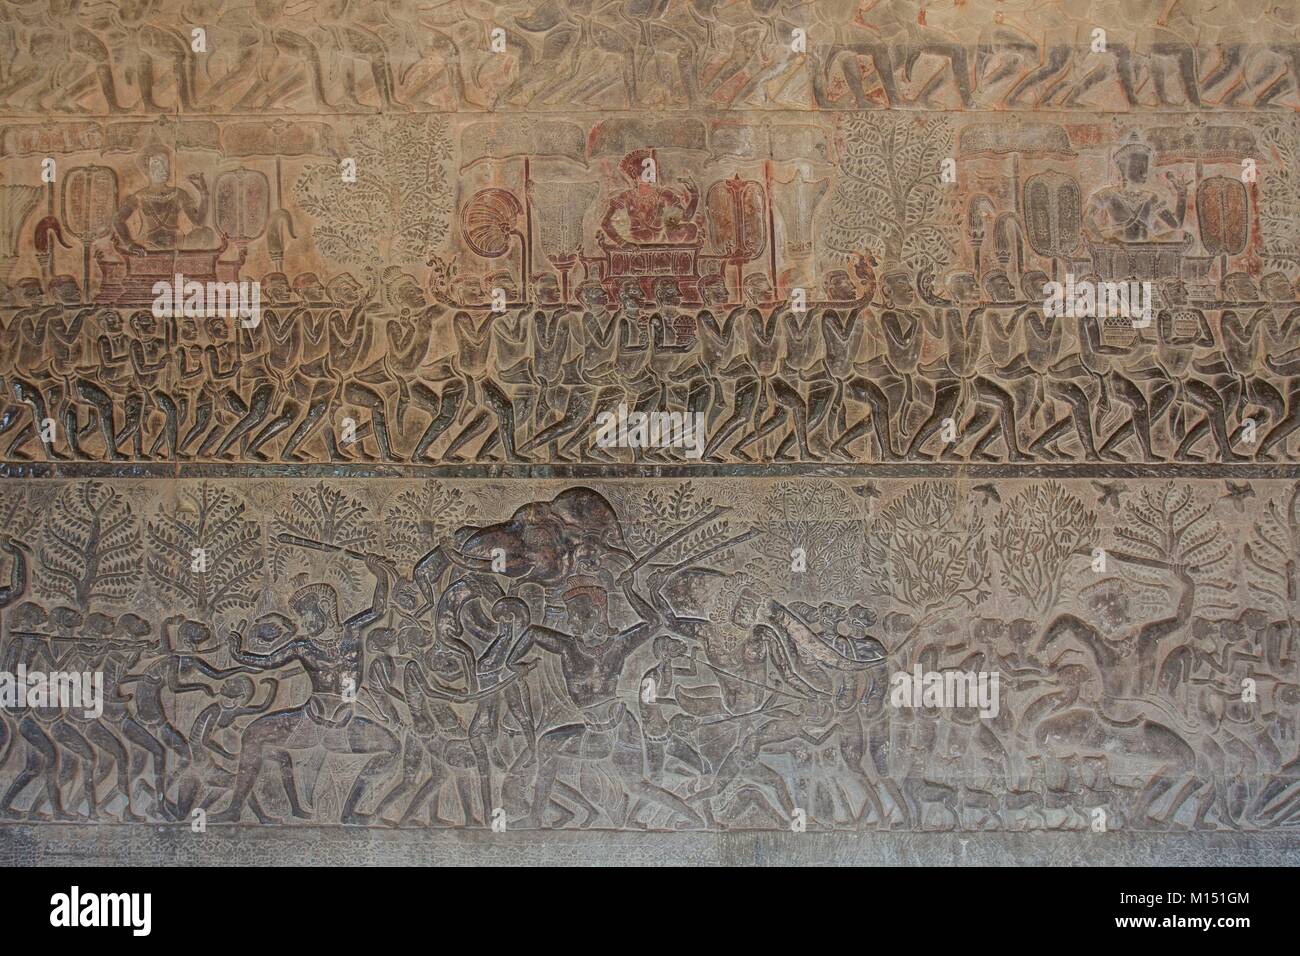 Kambodscha, Angkor, als Weltkulturerbe von der UNESCO, Angkor Vat Tempel: Indianer Geschichten Stockfoto